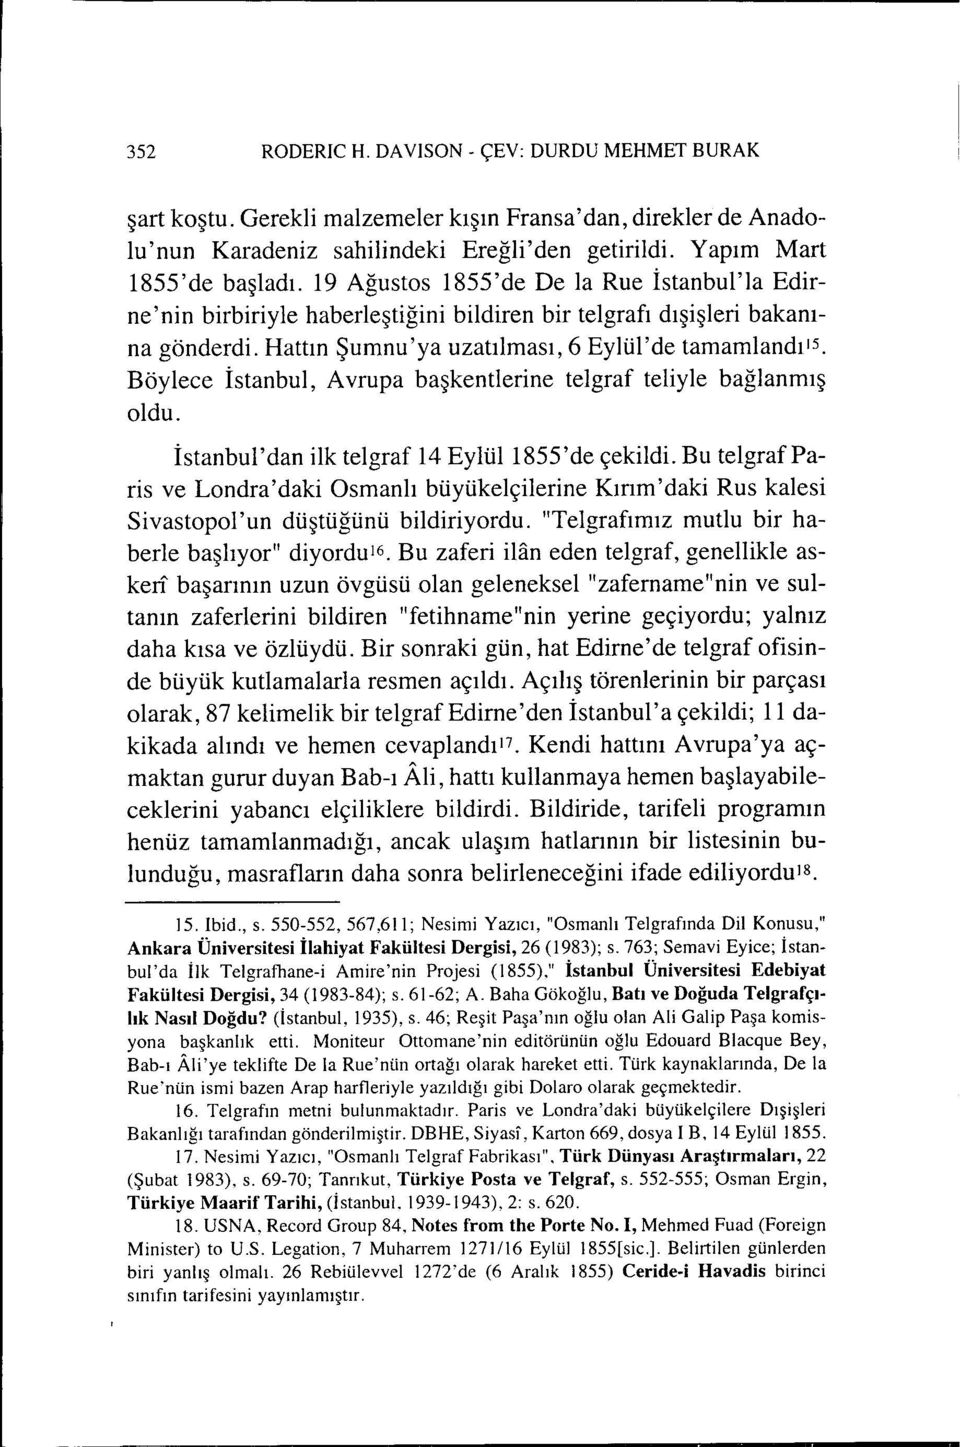 Böylece İstanbul, Avrupa başkentlerine telgraf teliyle bağlanmış oldu. İstanbul'dan ilk telgraf 14 Eylül 1855'de çekildi.